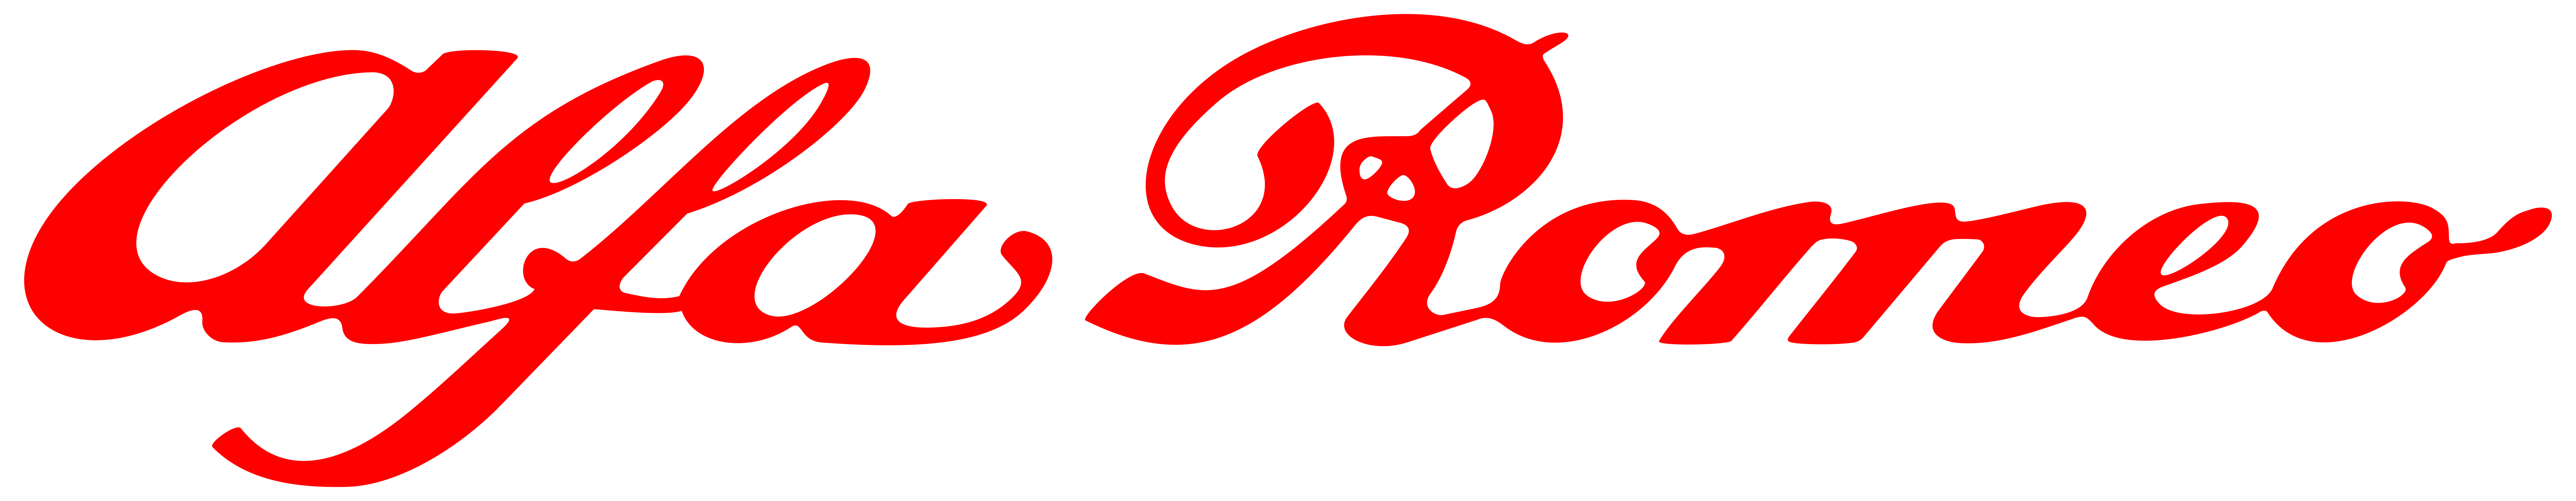 Alfa Romeo Racing Logo Png | hagellacarter